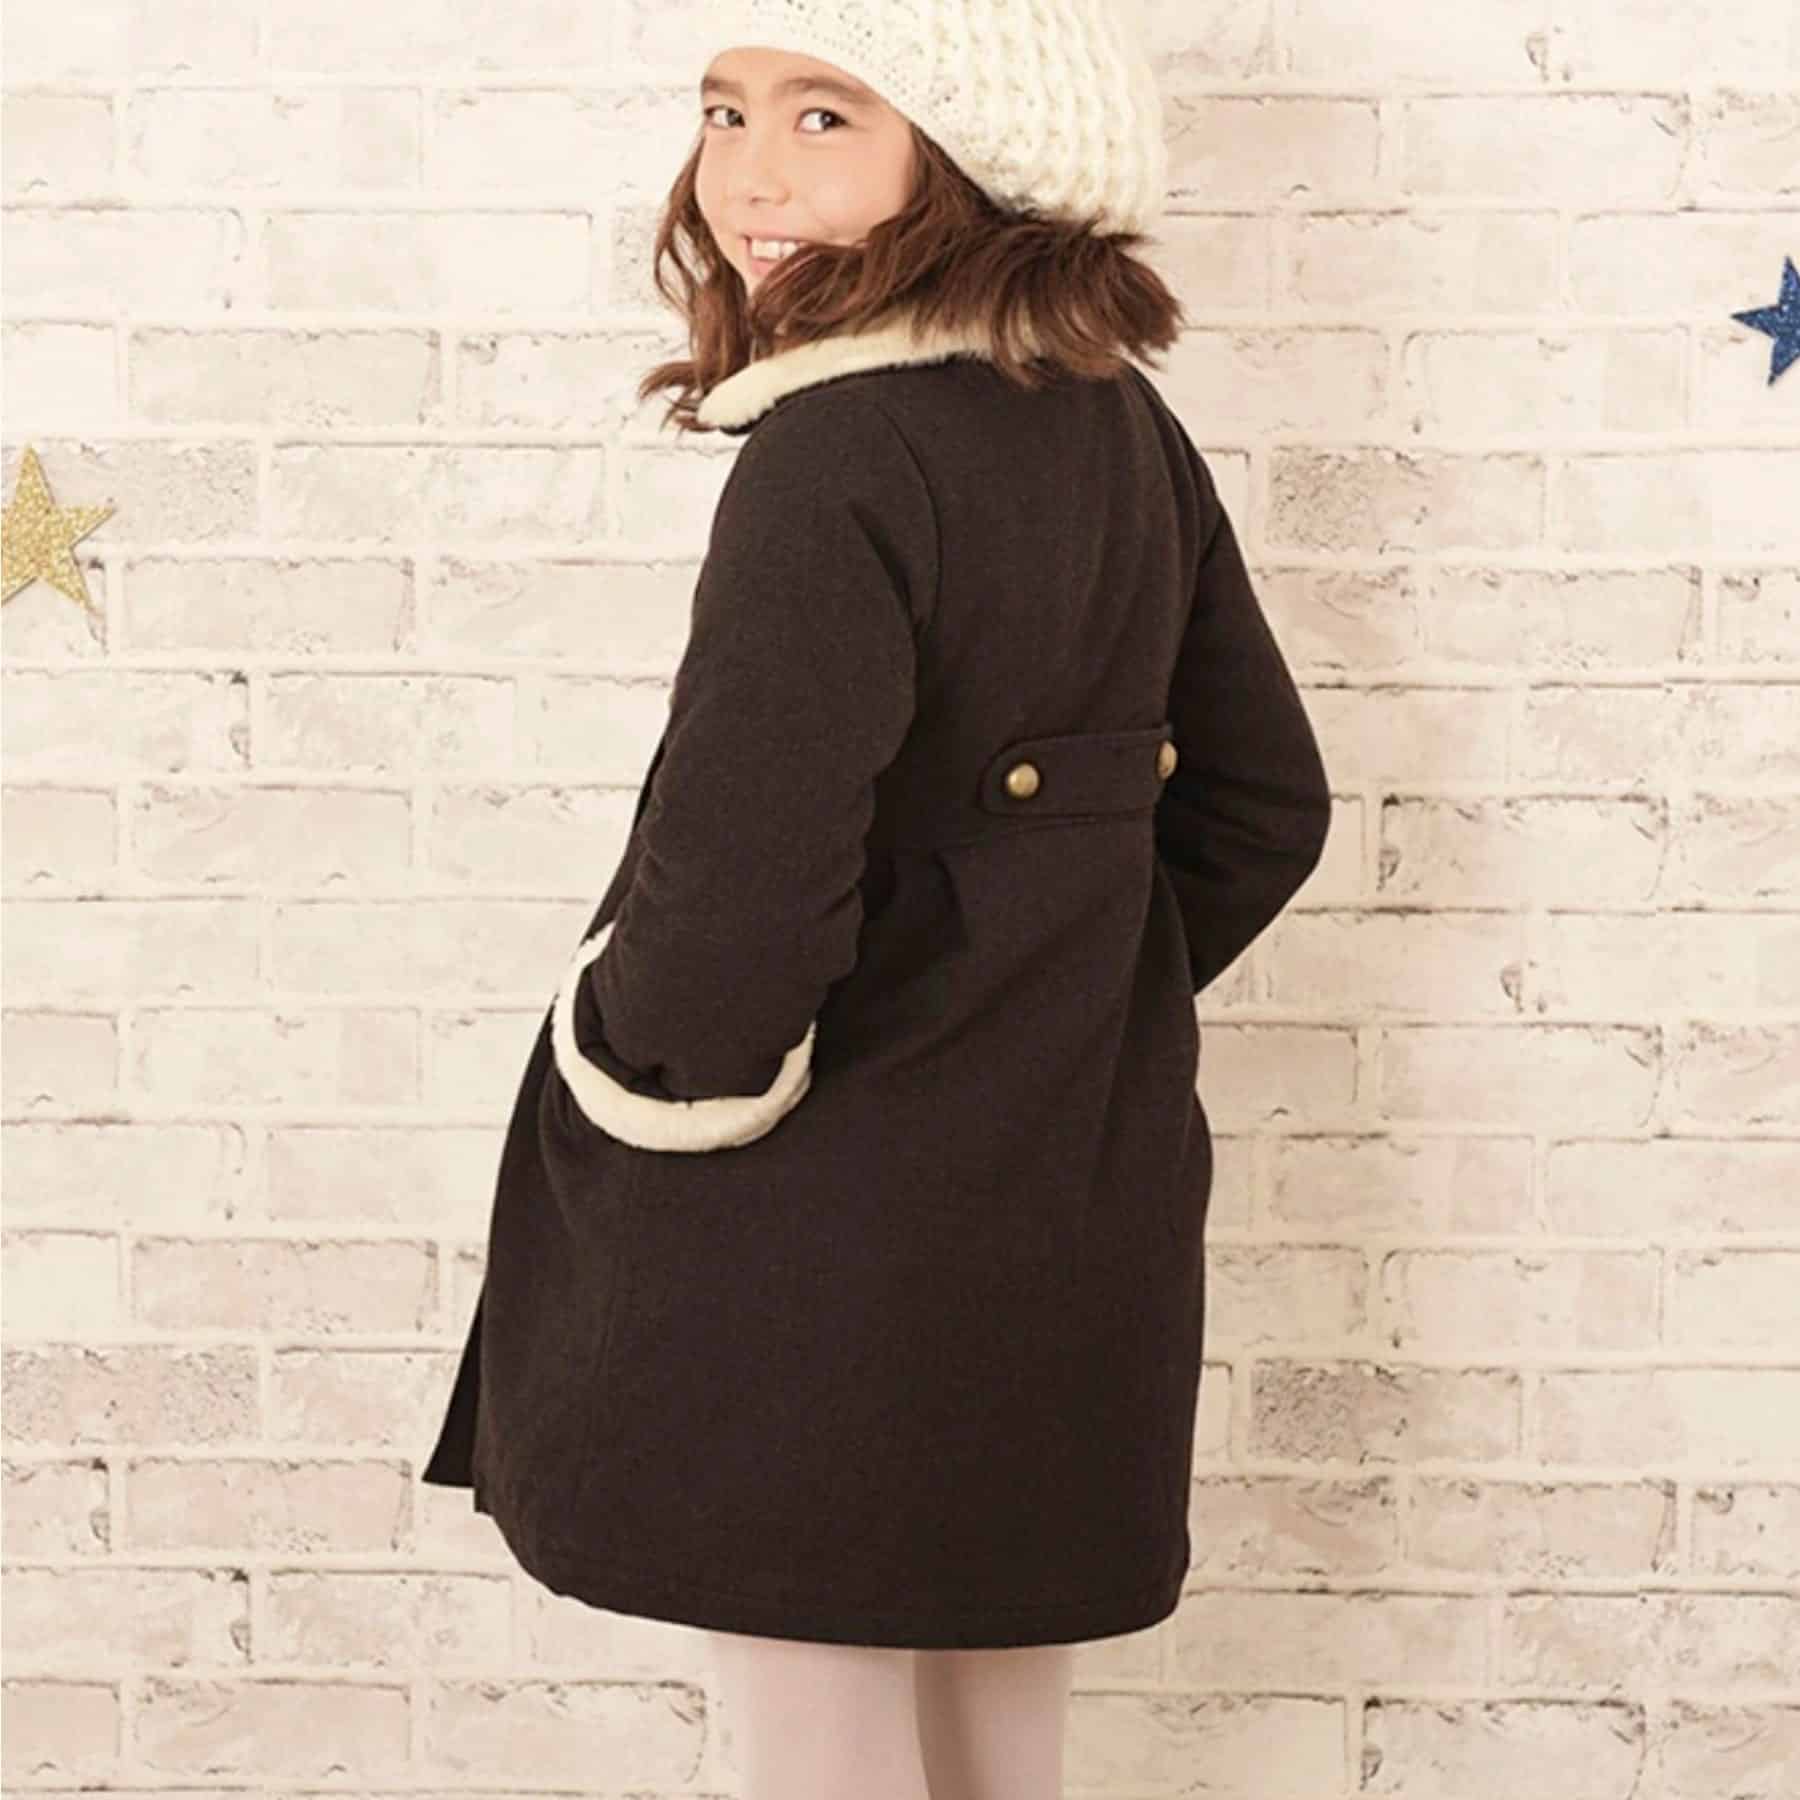 Magnifique Manteau en Laine Marron et Col Fausse Fourrure Beige pour petite Fille de la marque de Mode pour Enfant La Faute à Voltaire